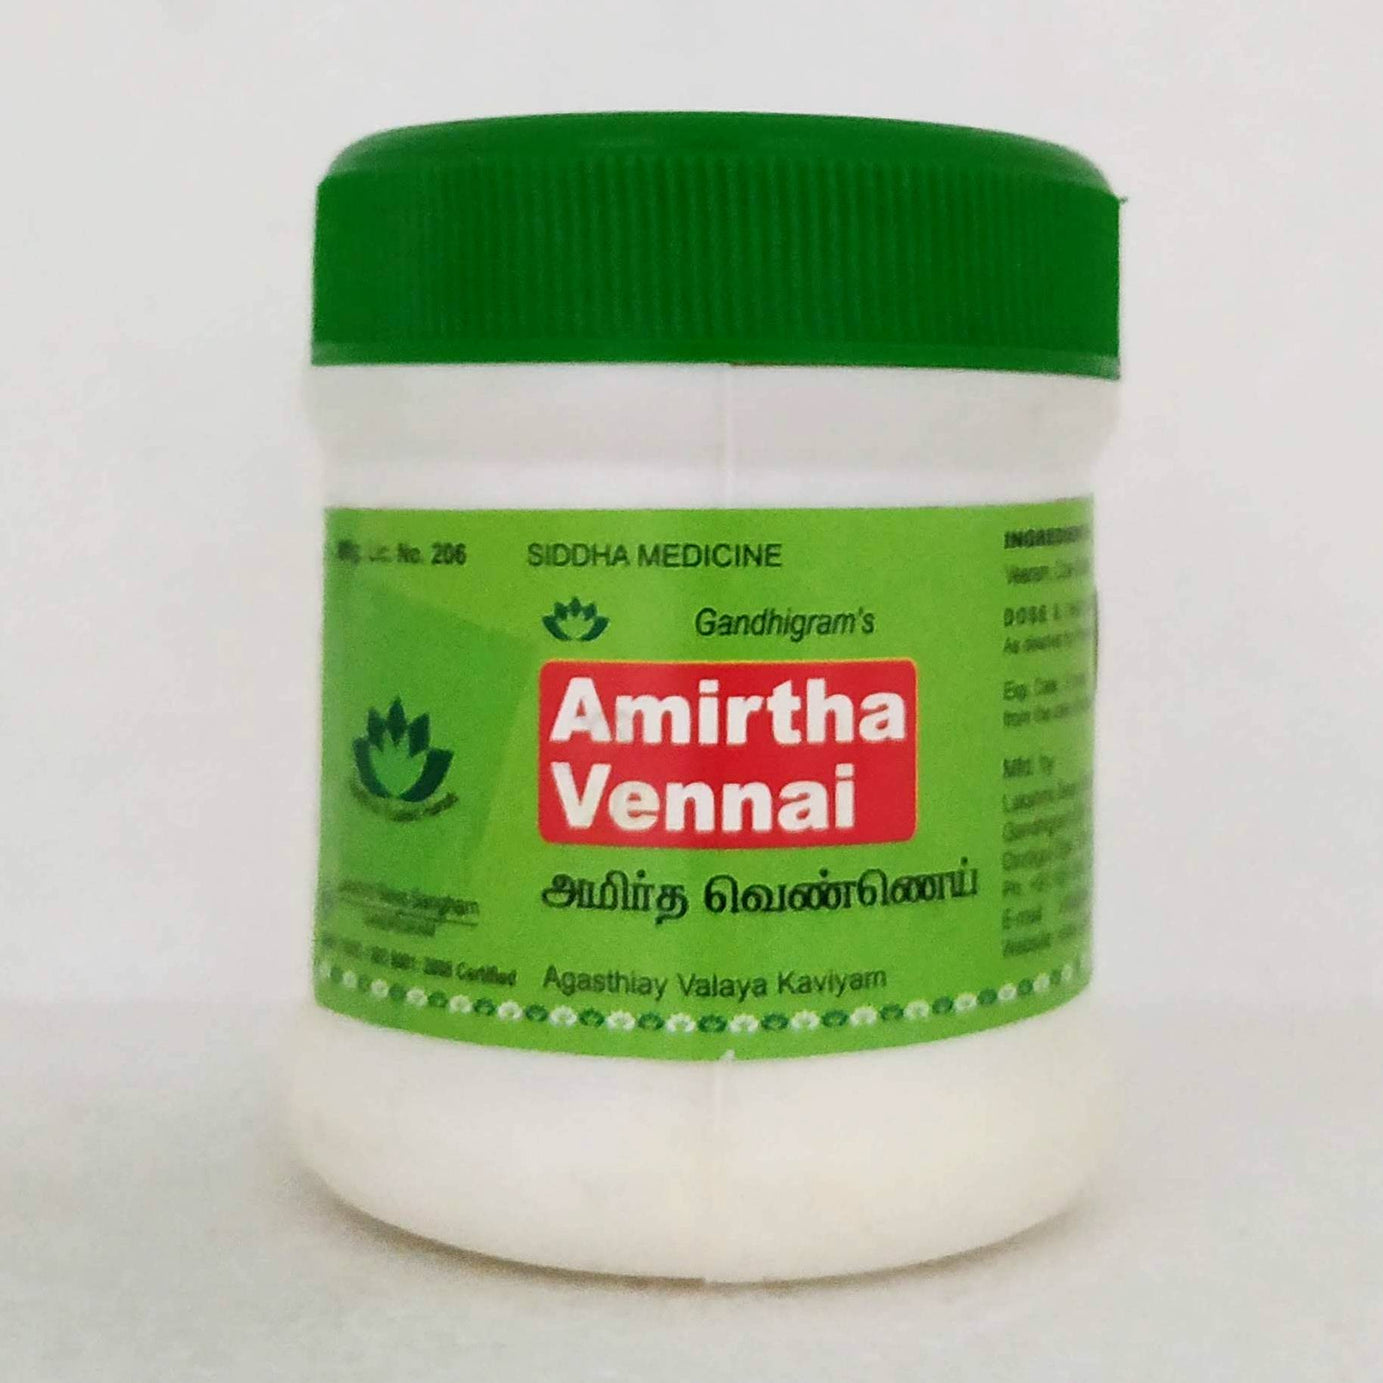 Shop Amirtha vennai 50gm at price 76.00 from Lakshmi Seva Sangham Online - Ayush Care